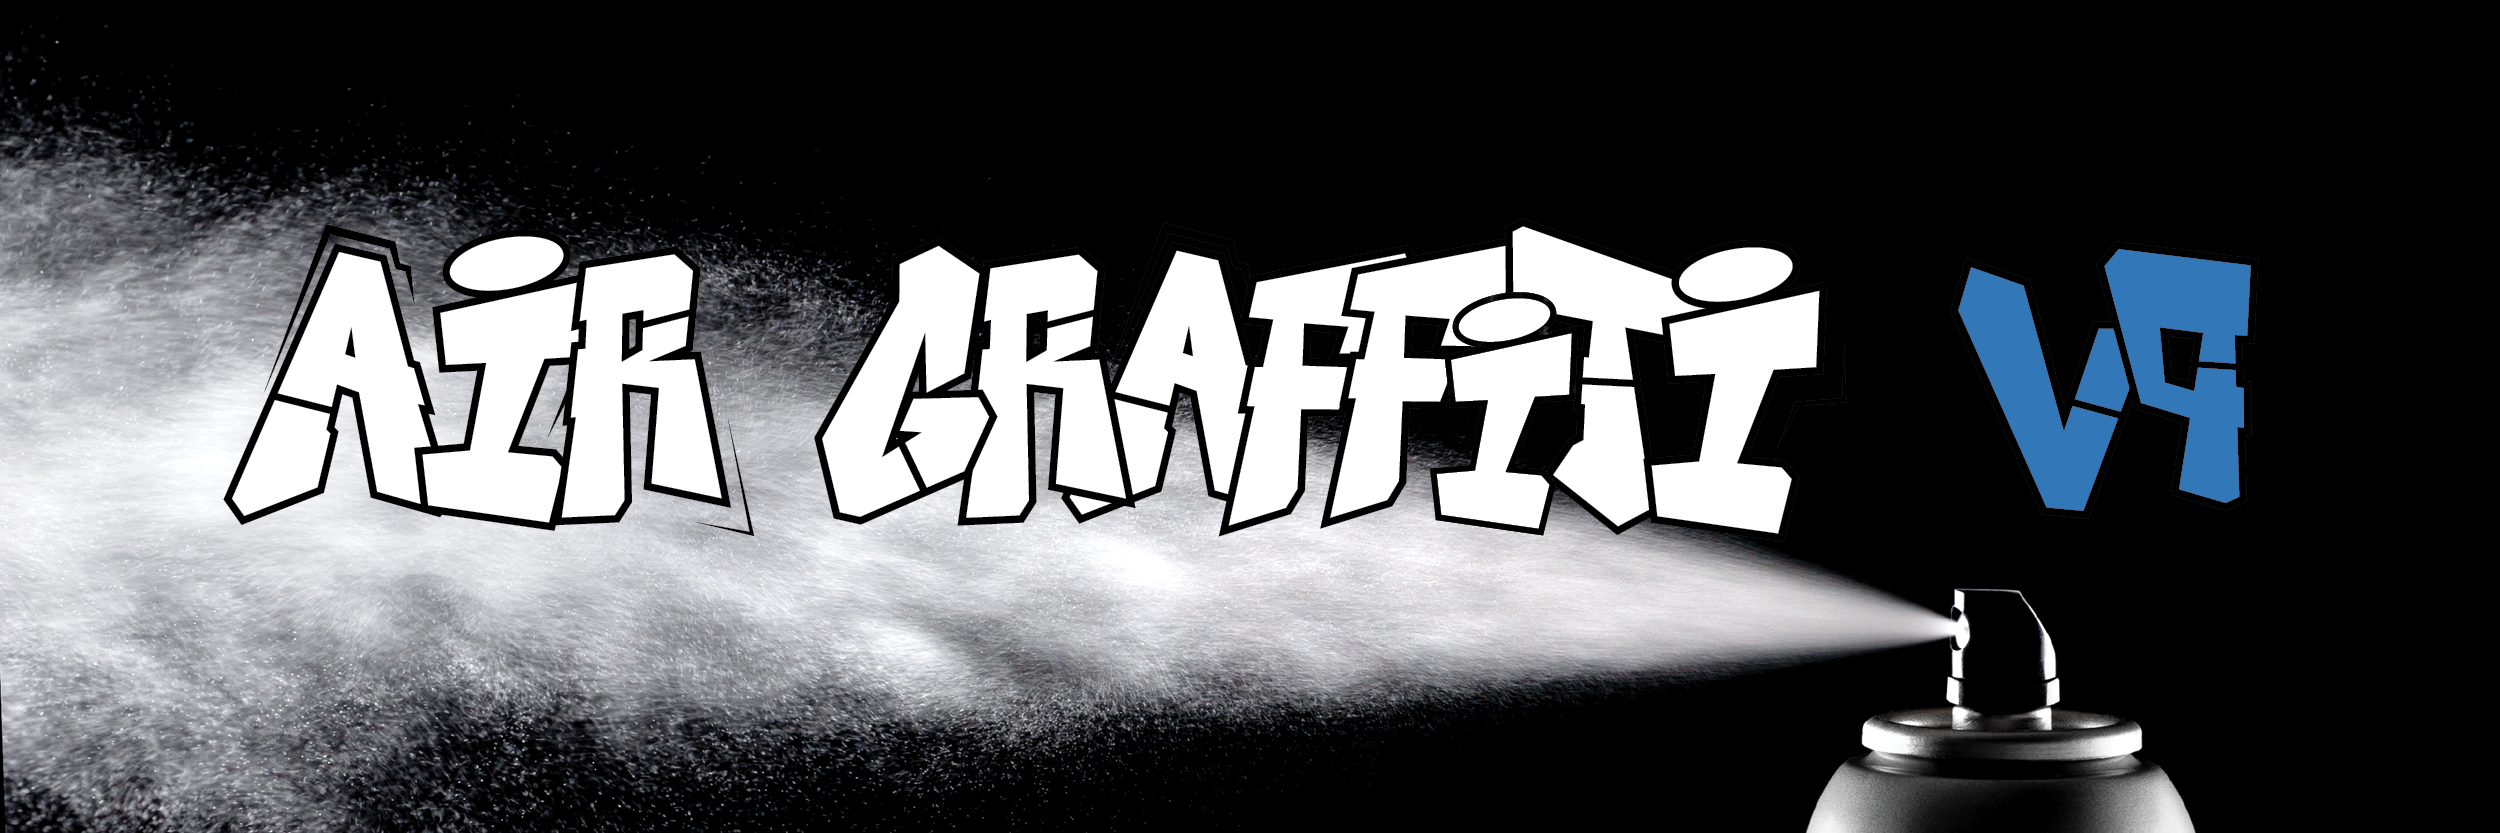 air graffiti software download